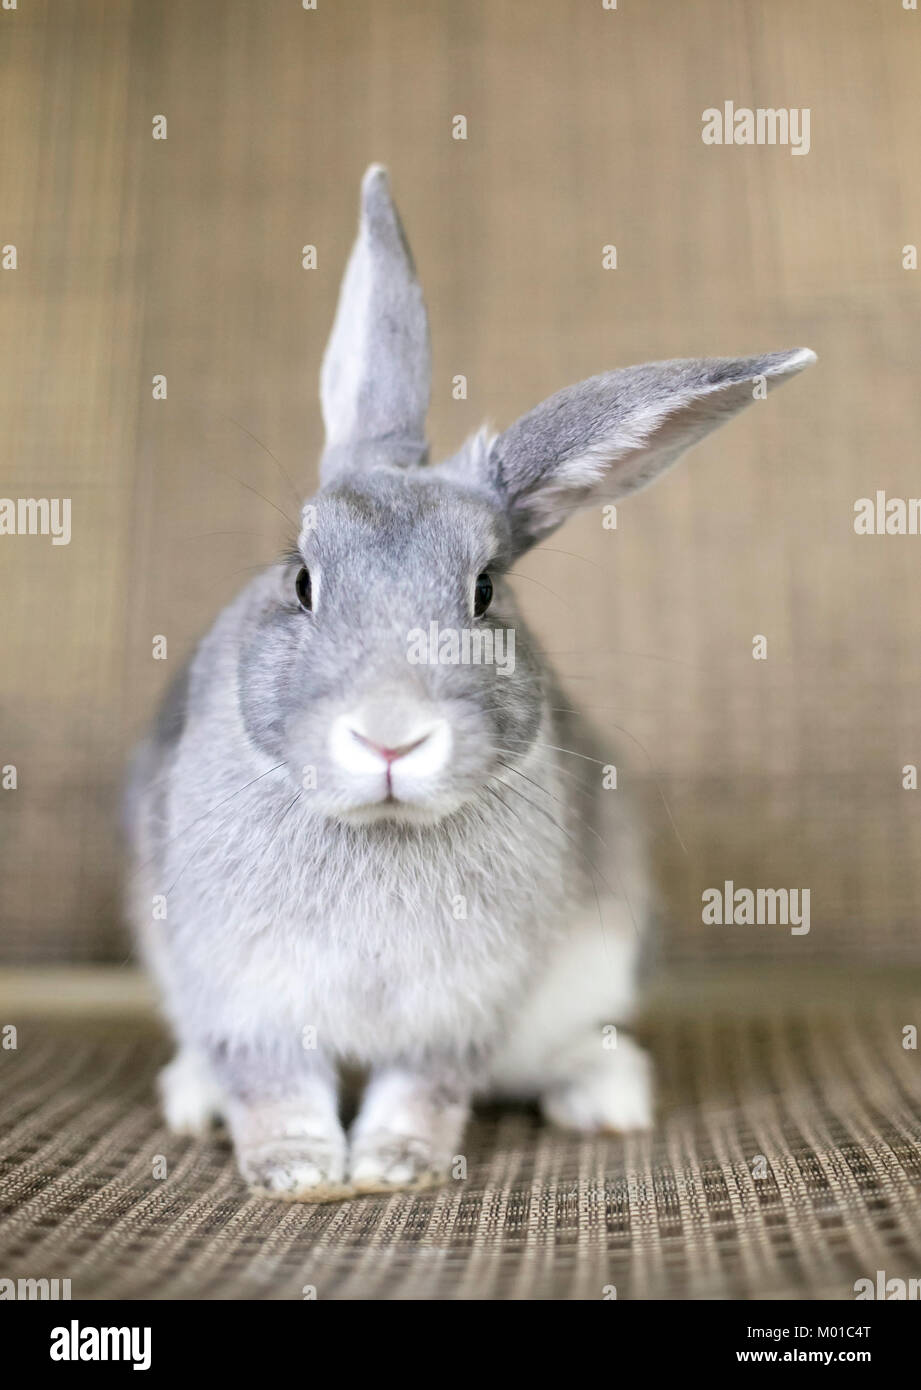 Portrait of a gray Chinchilla Rabbit Stock Photo